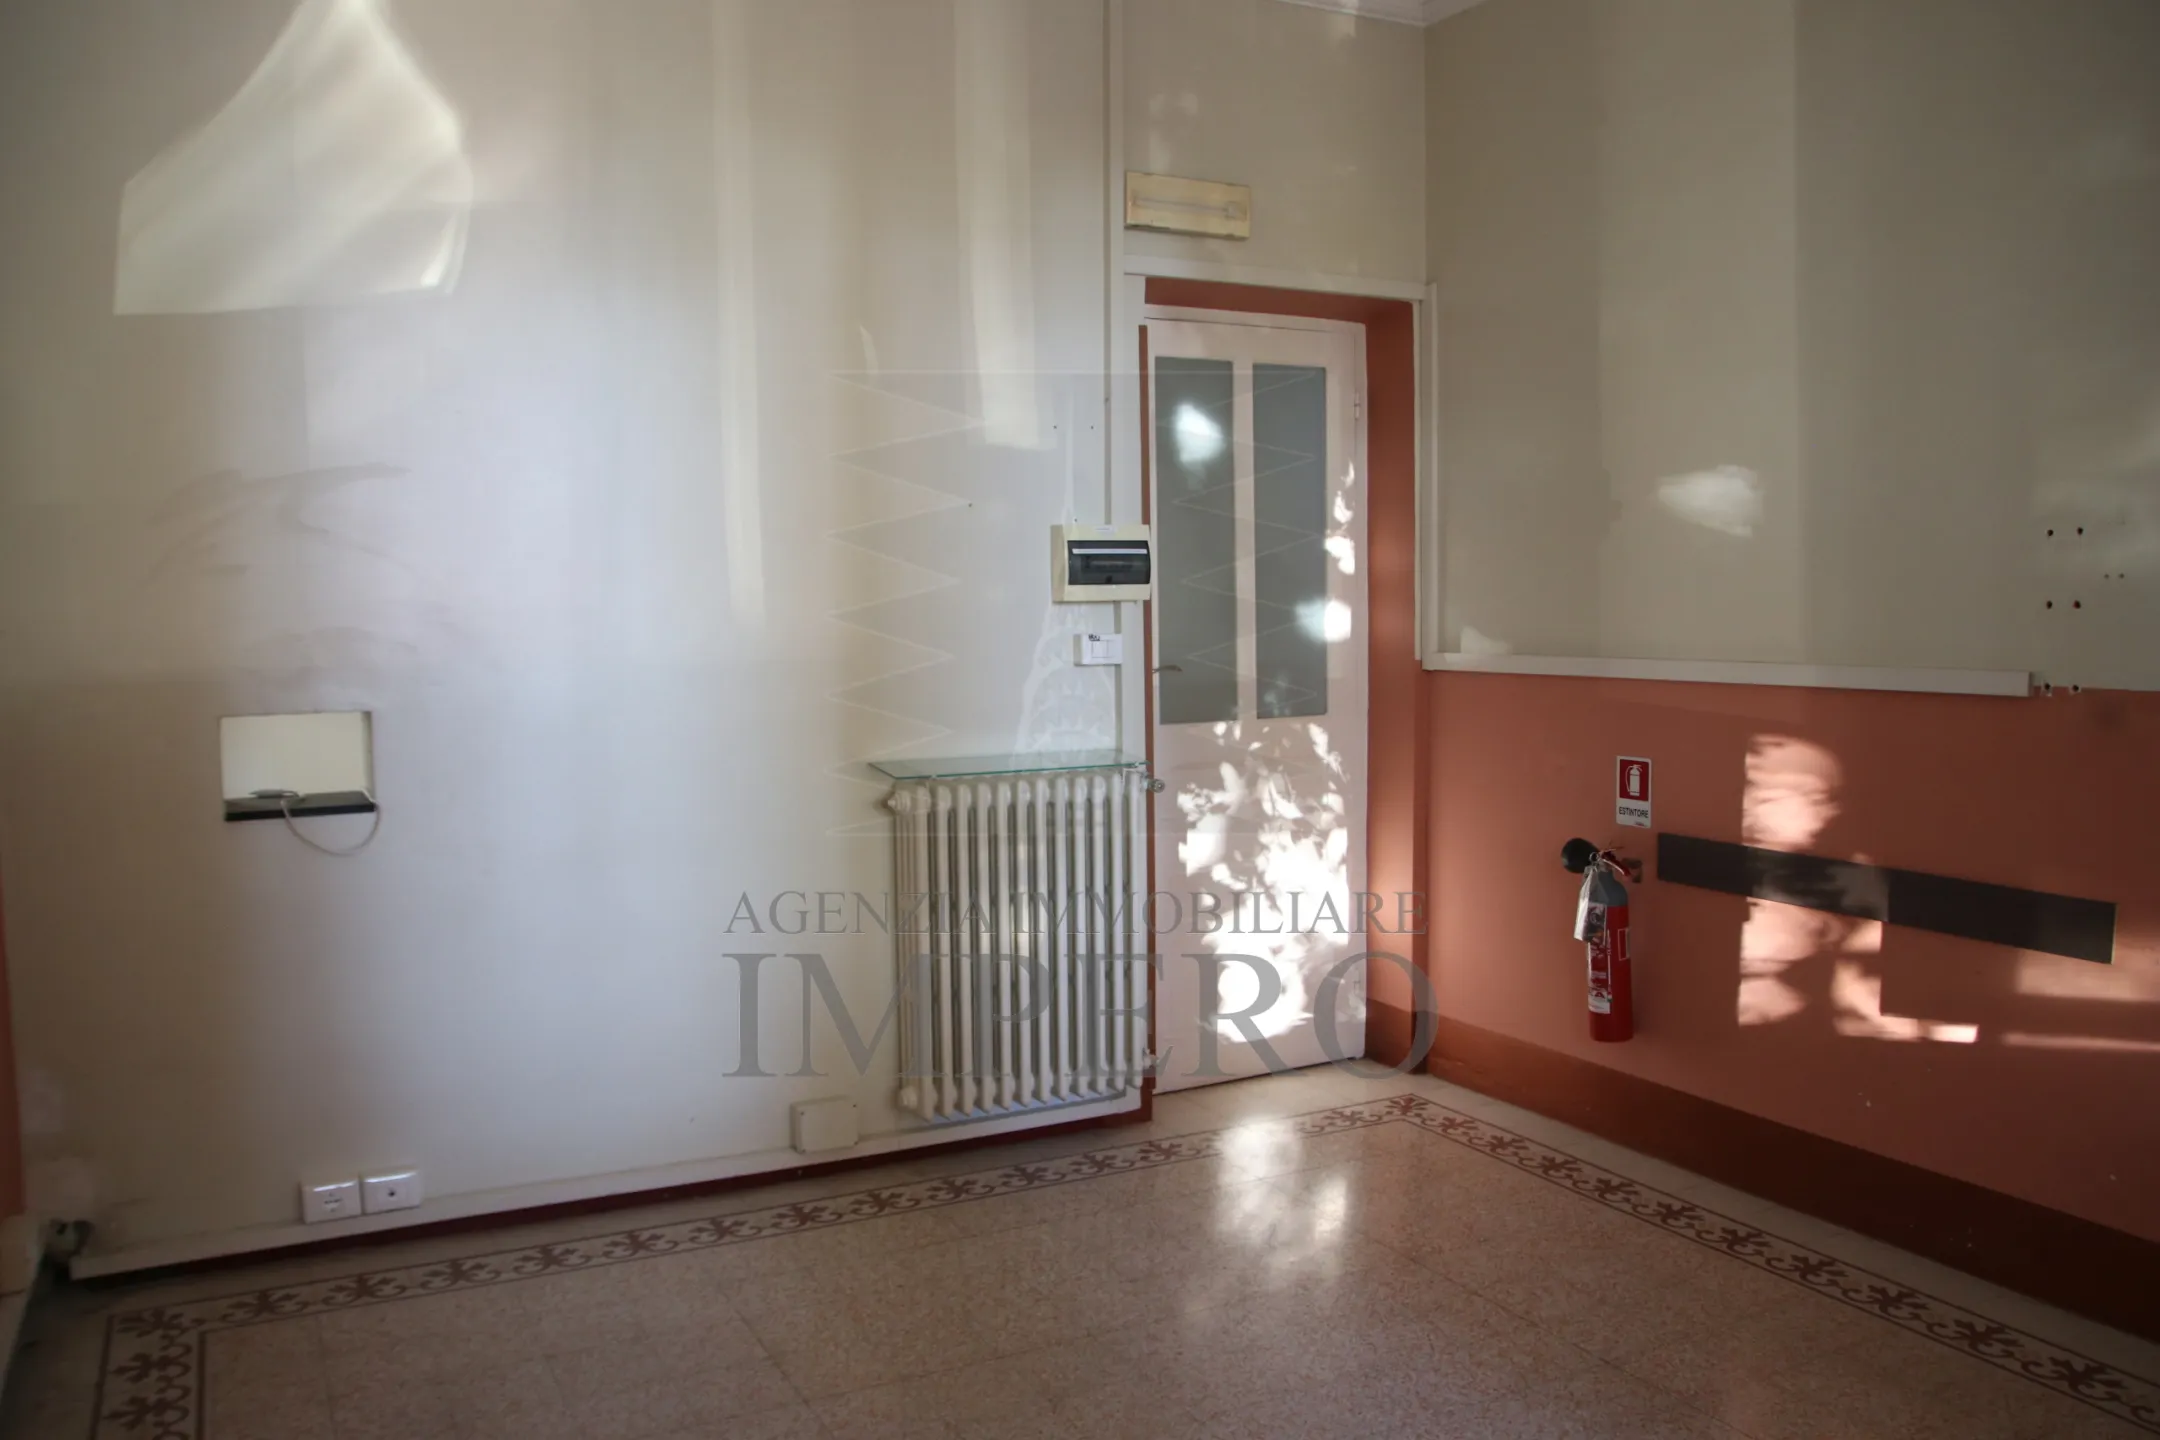 Immagine per Appartamento in vendita a Ventimiglia via Vittorio Veneto